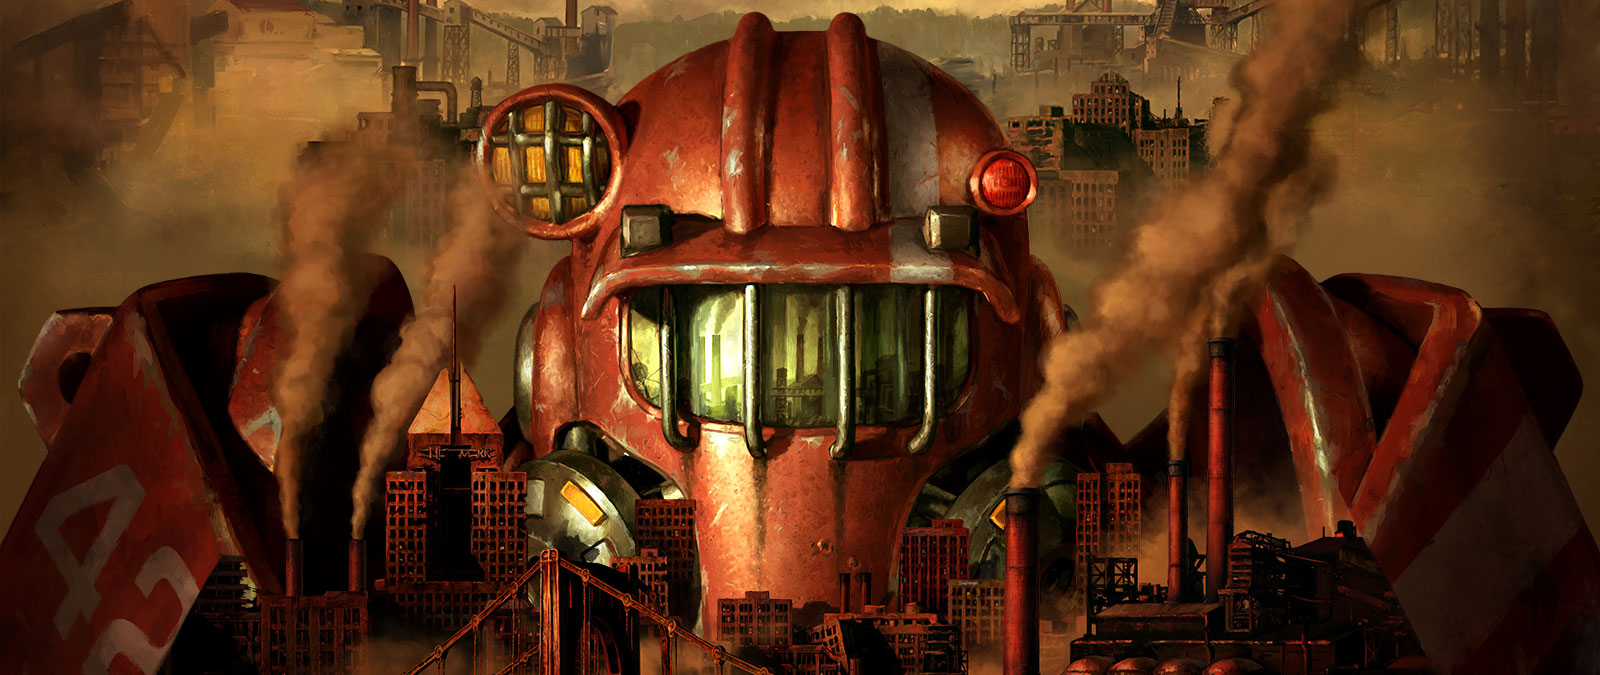 En figur i Power Armor dukker op højt over Pitts forurenede skyline.